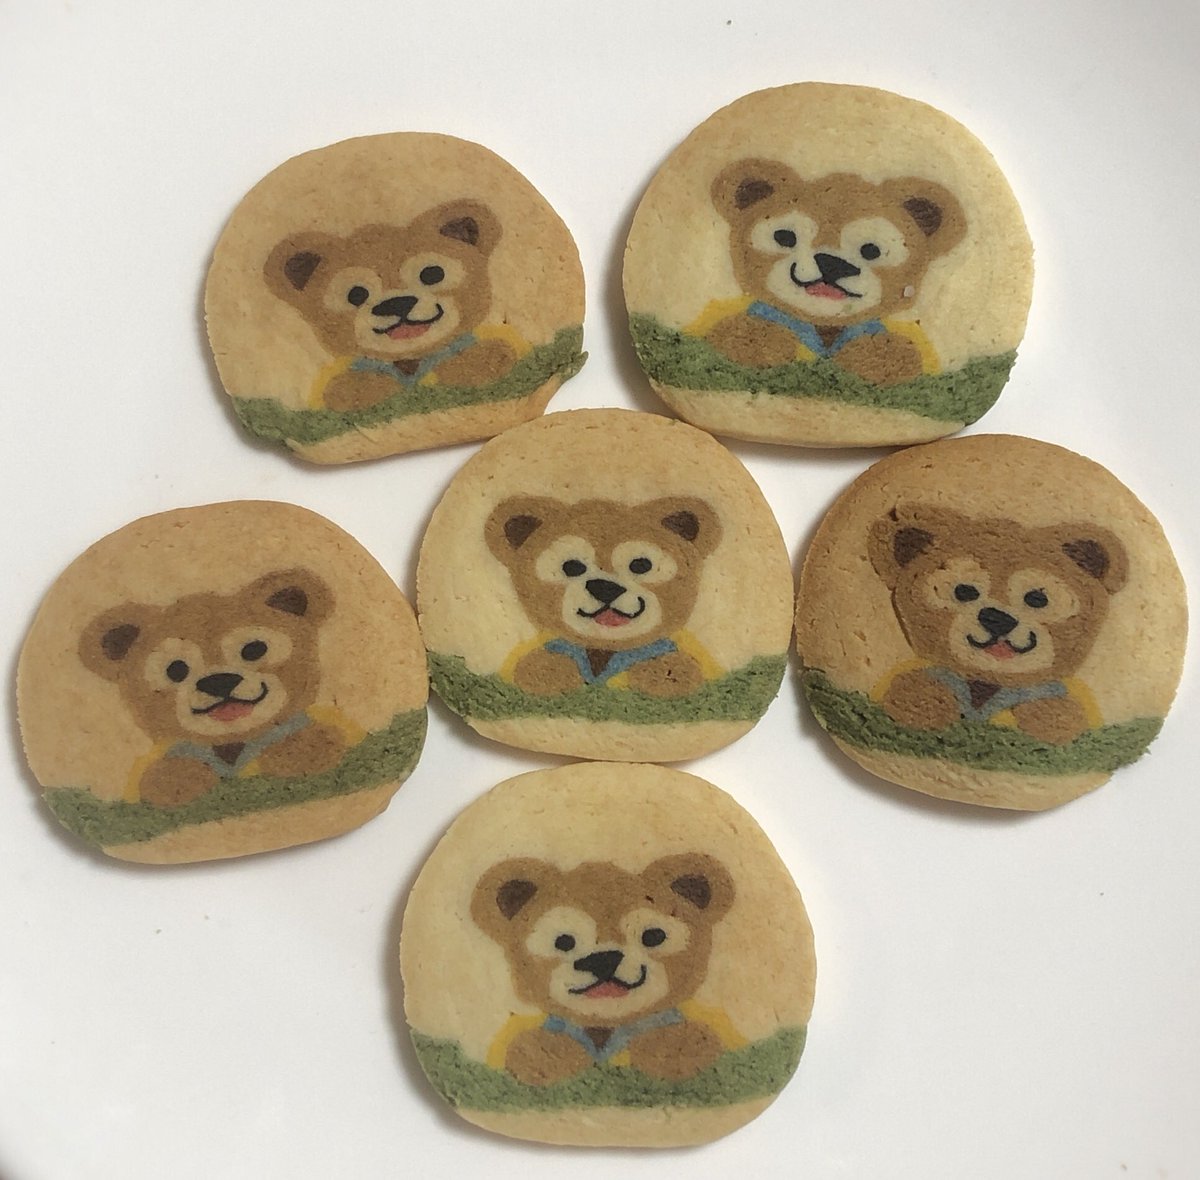 Izuyo Su Twitter ダッフィーの クッキー焼きました ダッフィー クッキー ディズニー Duffy Cookies Disney アイスボックスクッキー お菓子作り